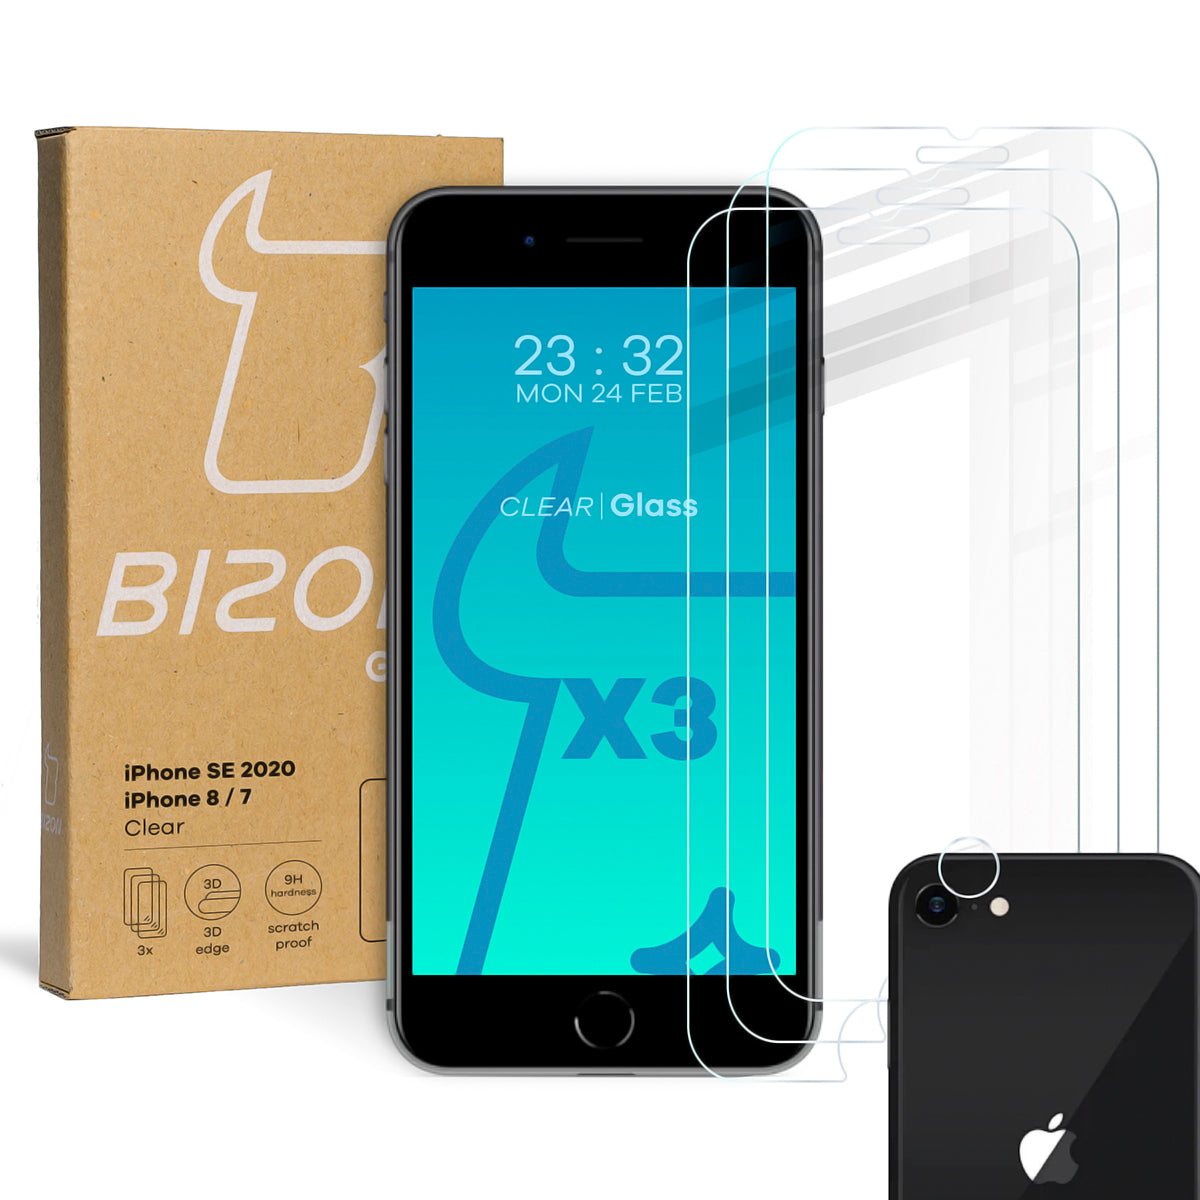 Gehärtetes Glas Bizon Glass Clear - 3 Stück + Kameraschutz, iPhone SE 2022/2020, 8/7